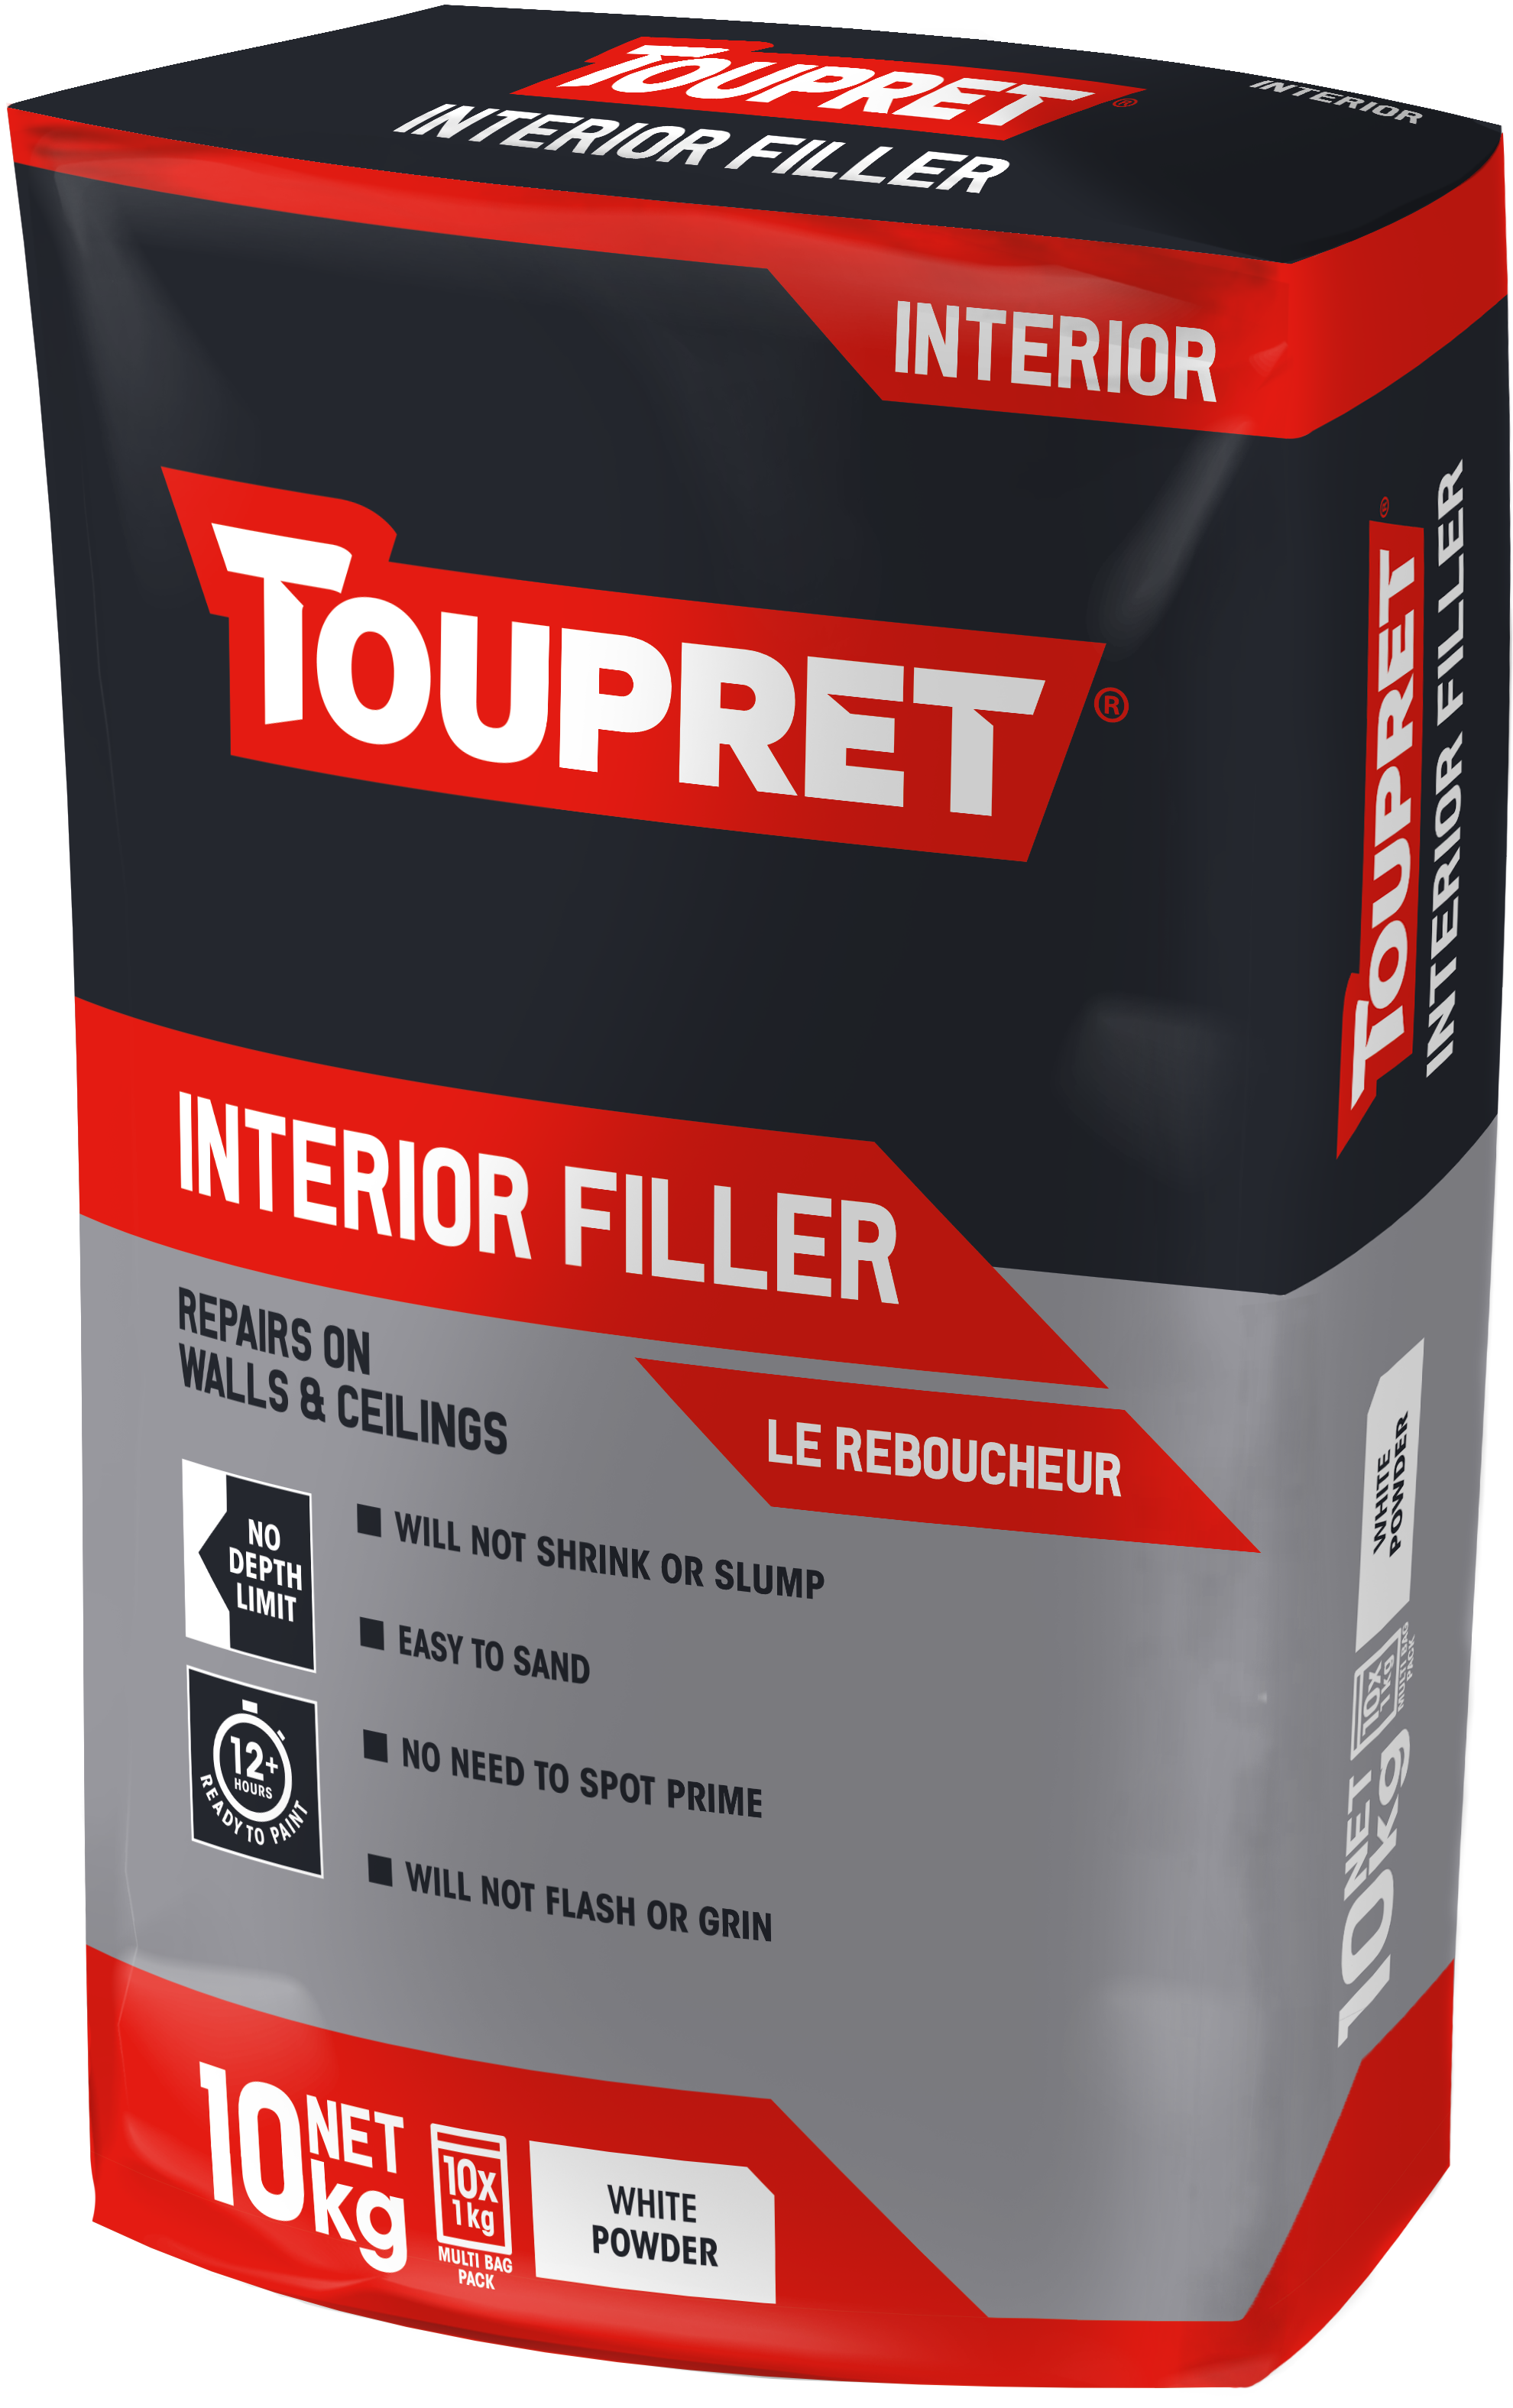 Toupret Interior Filler (Le Reboucheur) 10x 1kg bag in bag